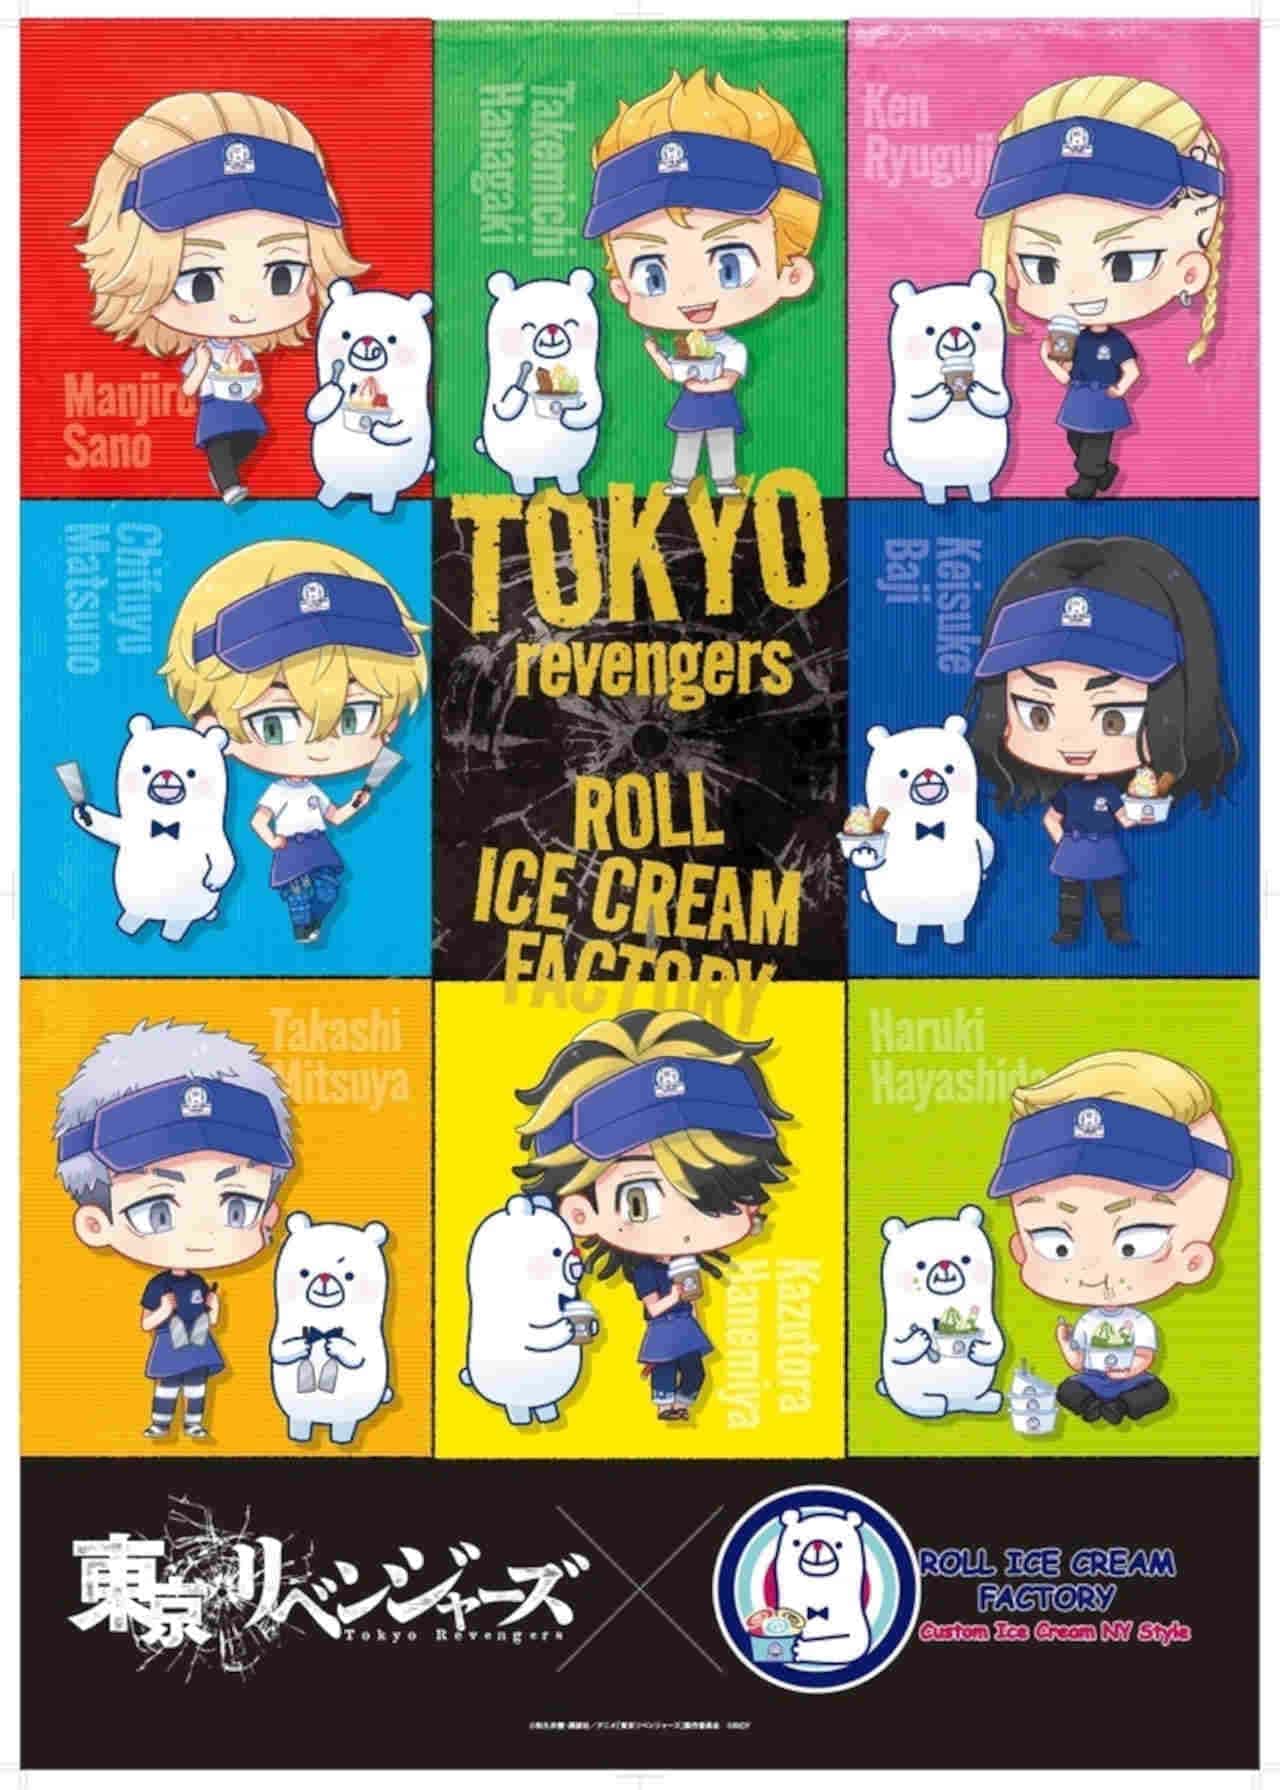 ロールアイスクリームファクトリー「東京リベンジャーズ」コラボ